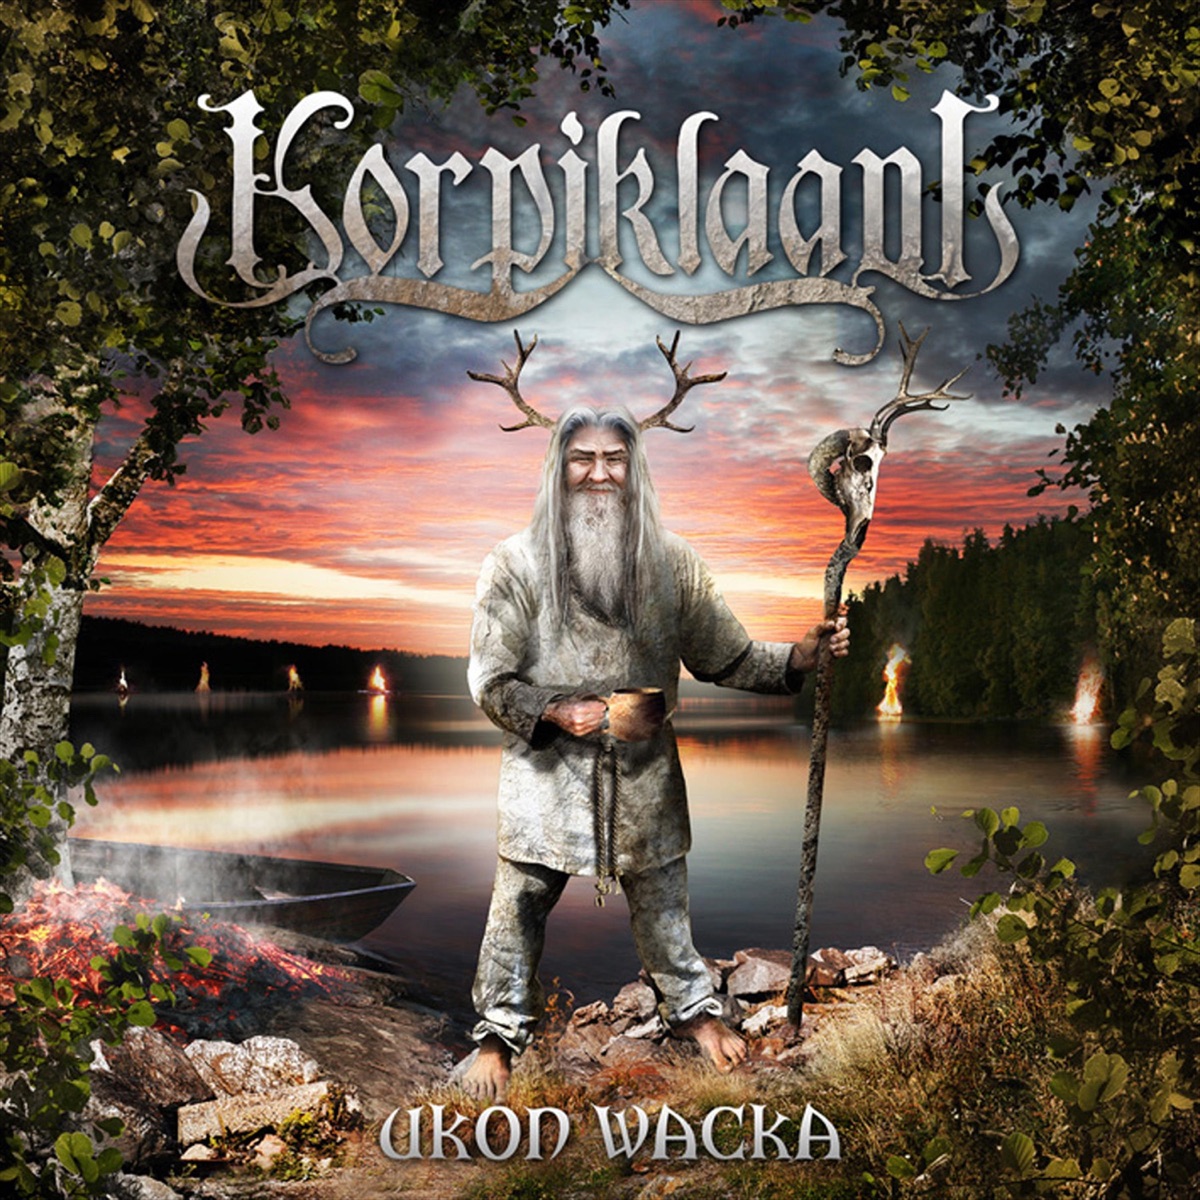 Noita - Album by Korpiklaani - Apple Music